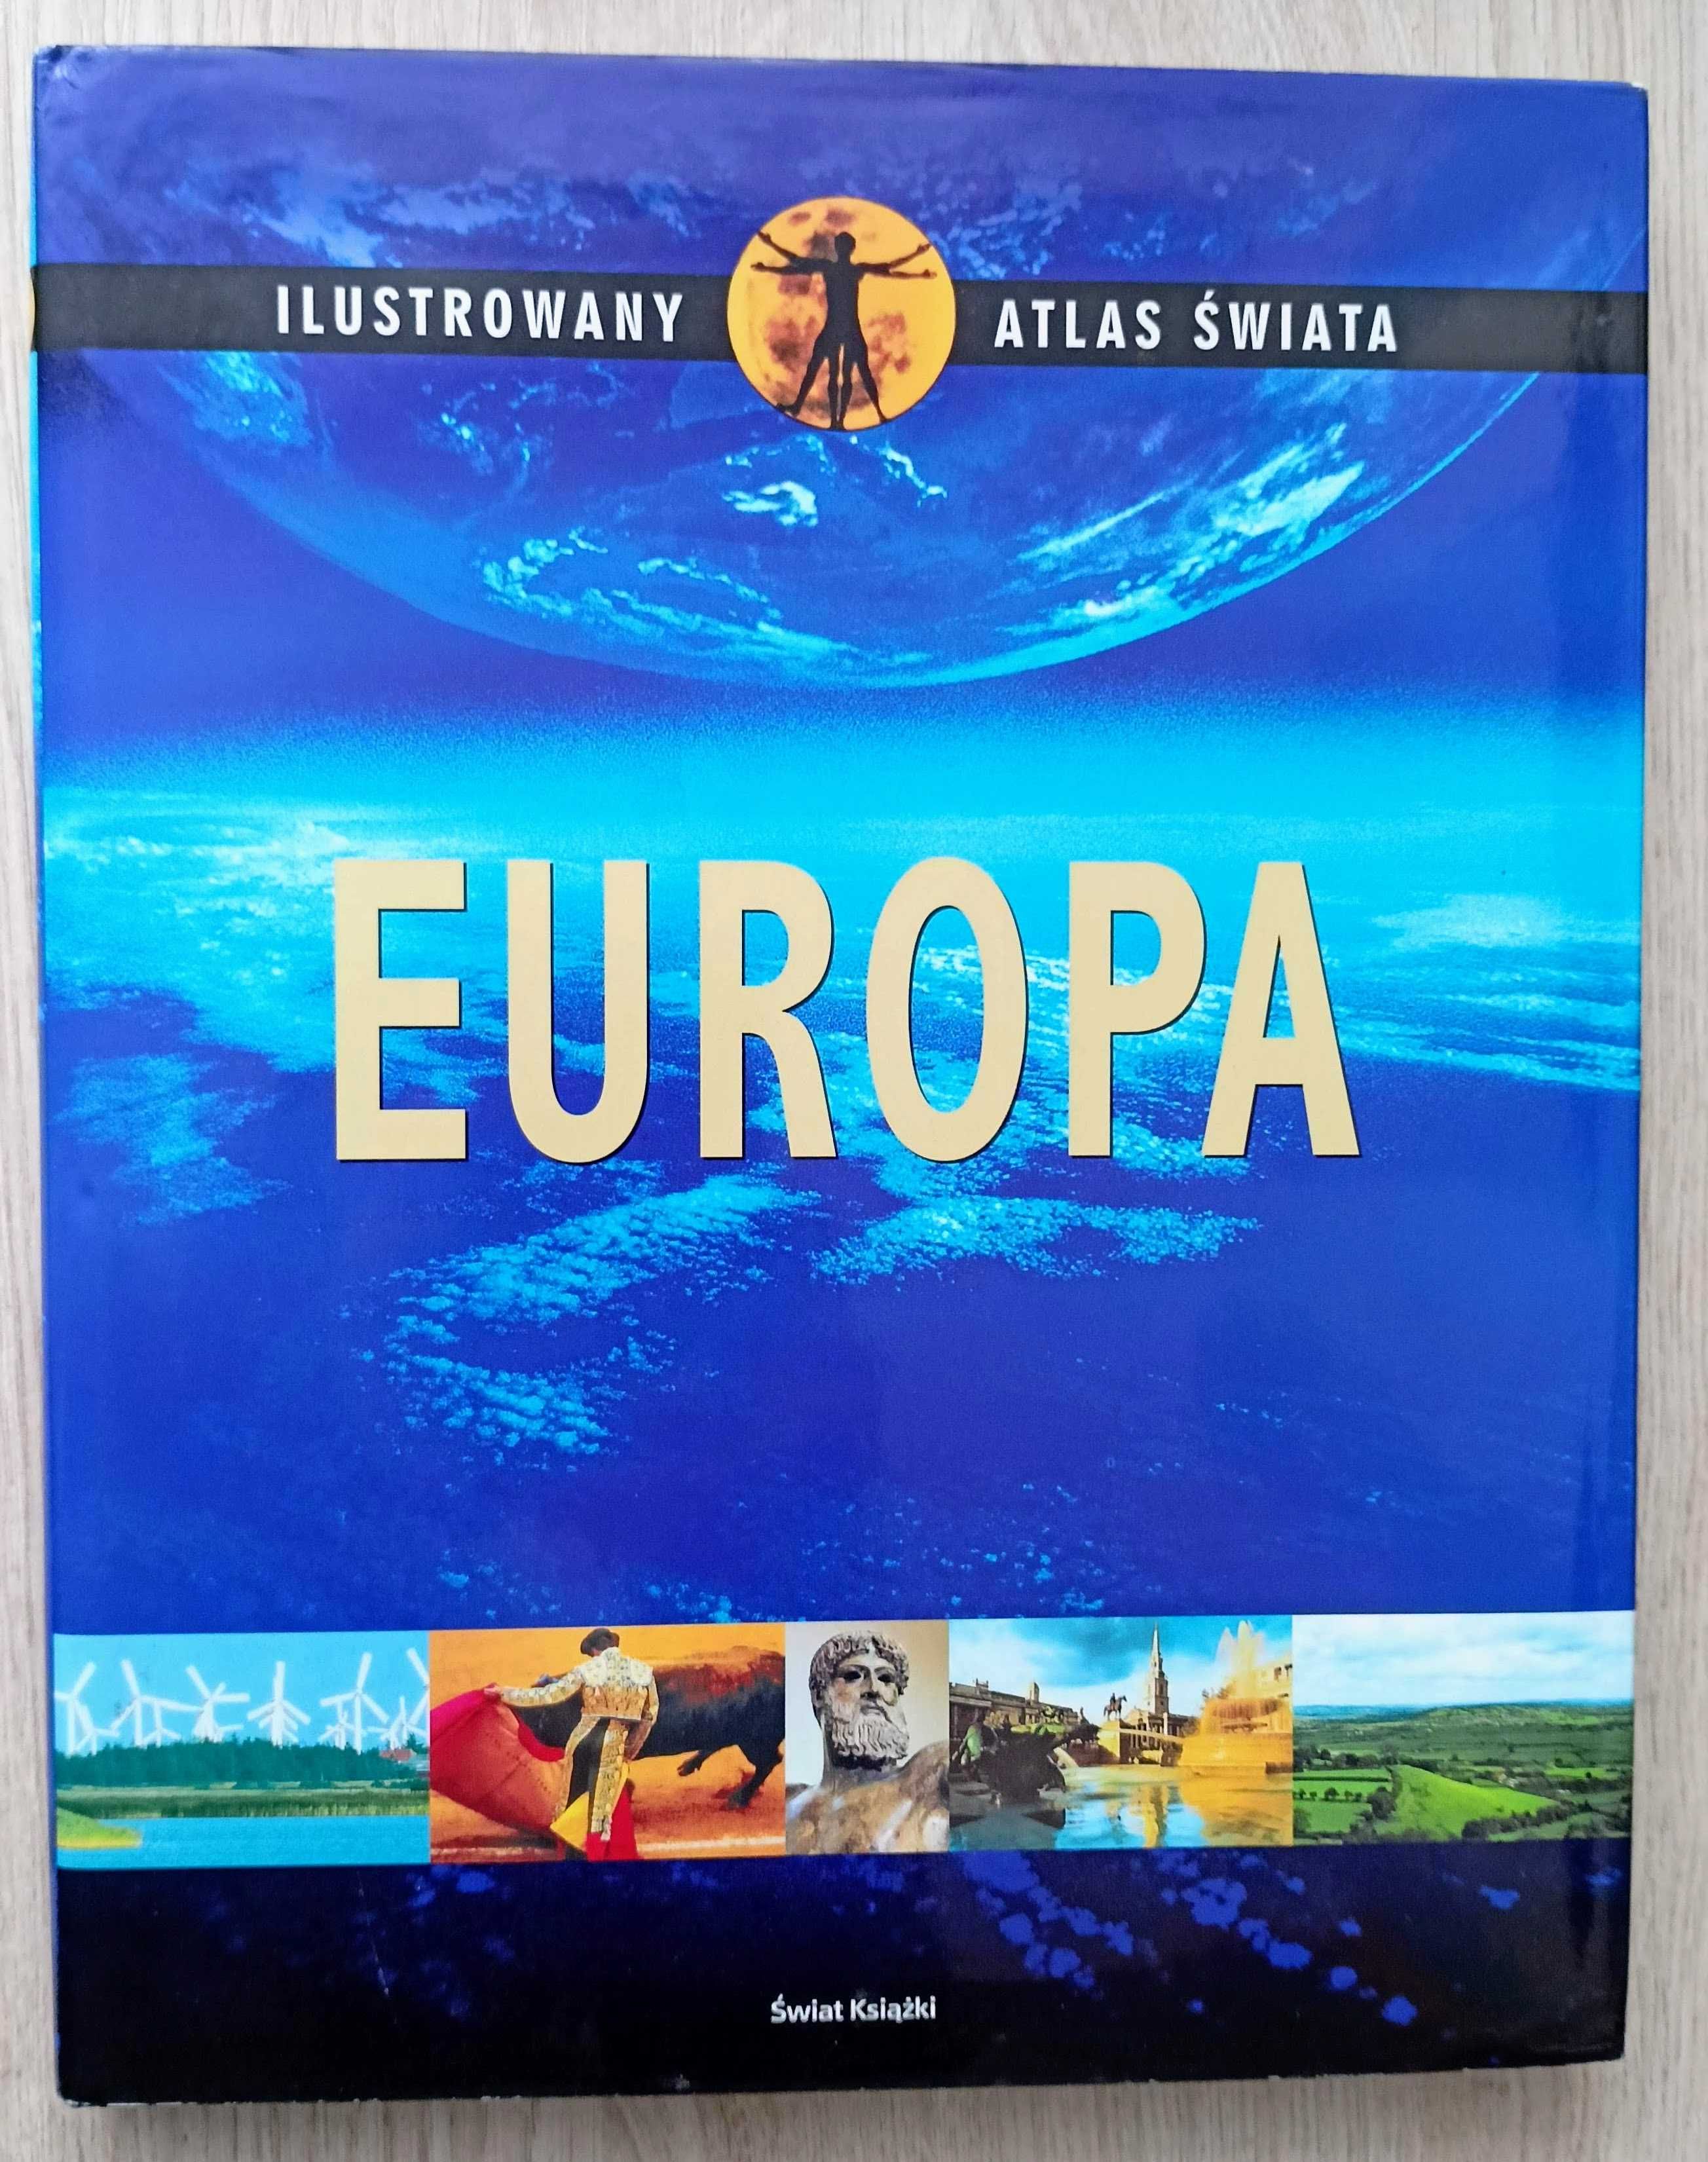 Ilustrowany Atlas Świata - 5 tomów